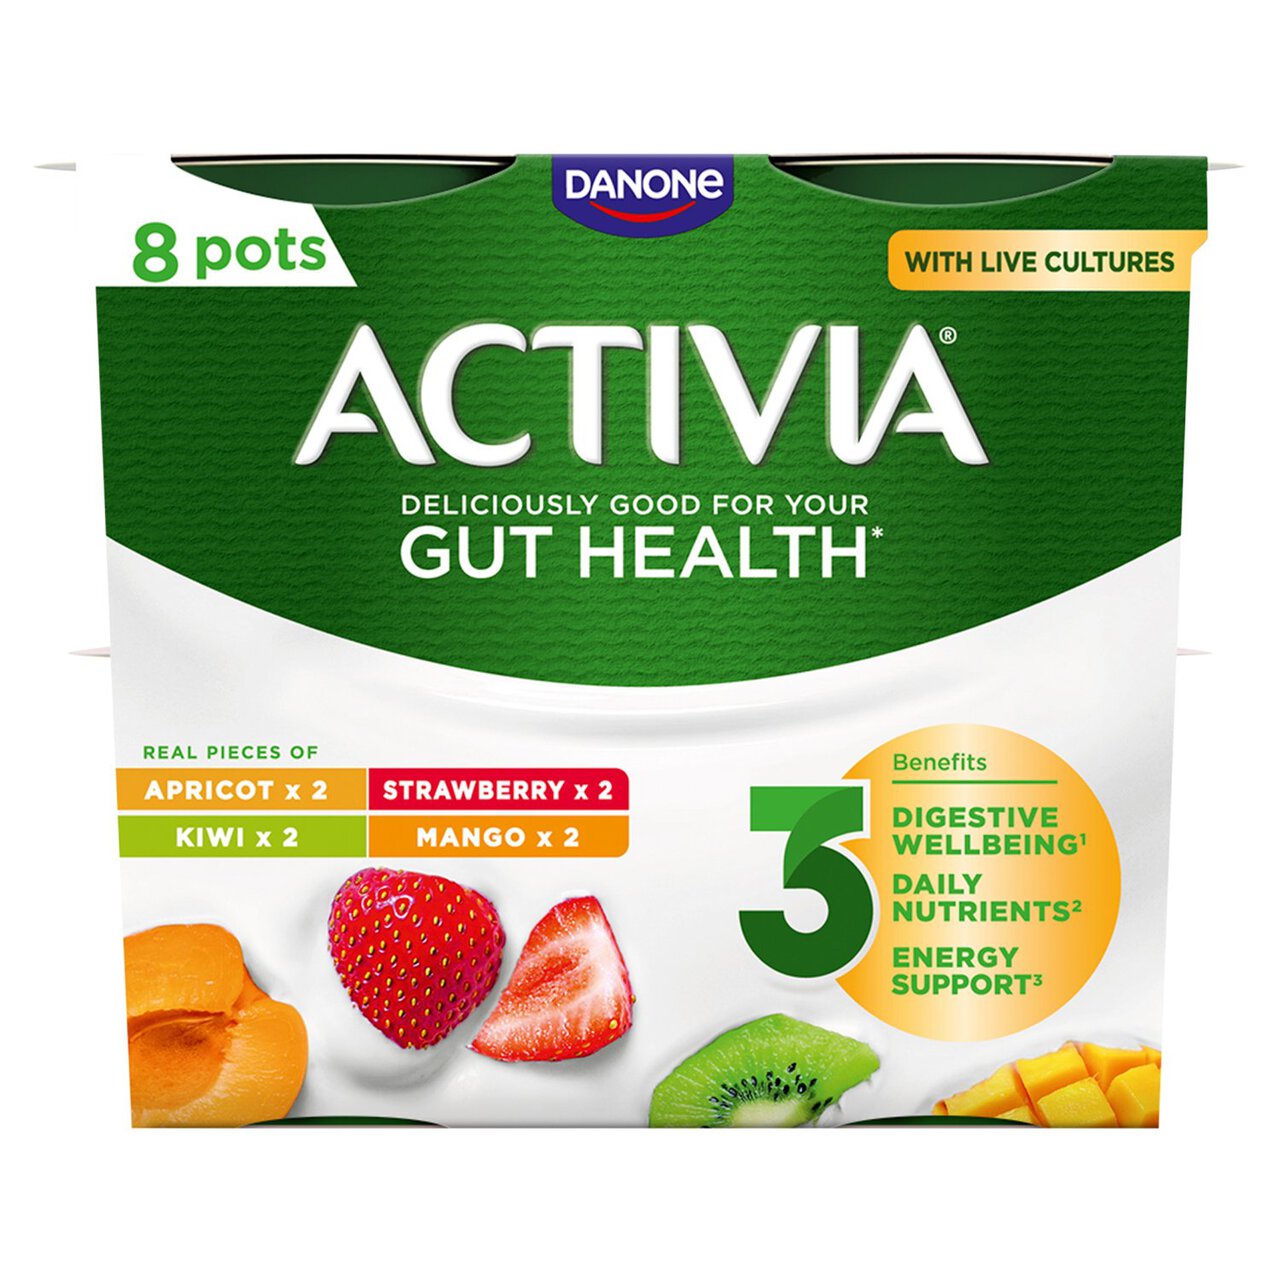 Activia Mango, Strawberry, Kiwi & Apricot Multipack Fruit Yoghurt 8 x 115g